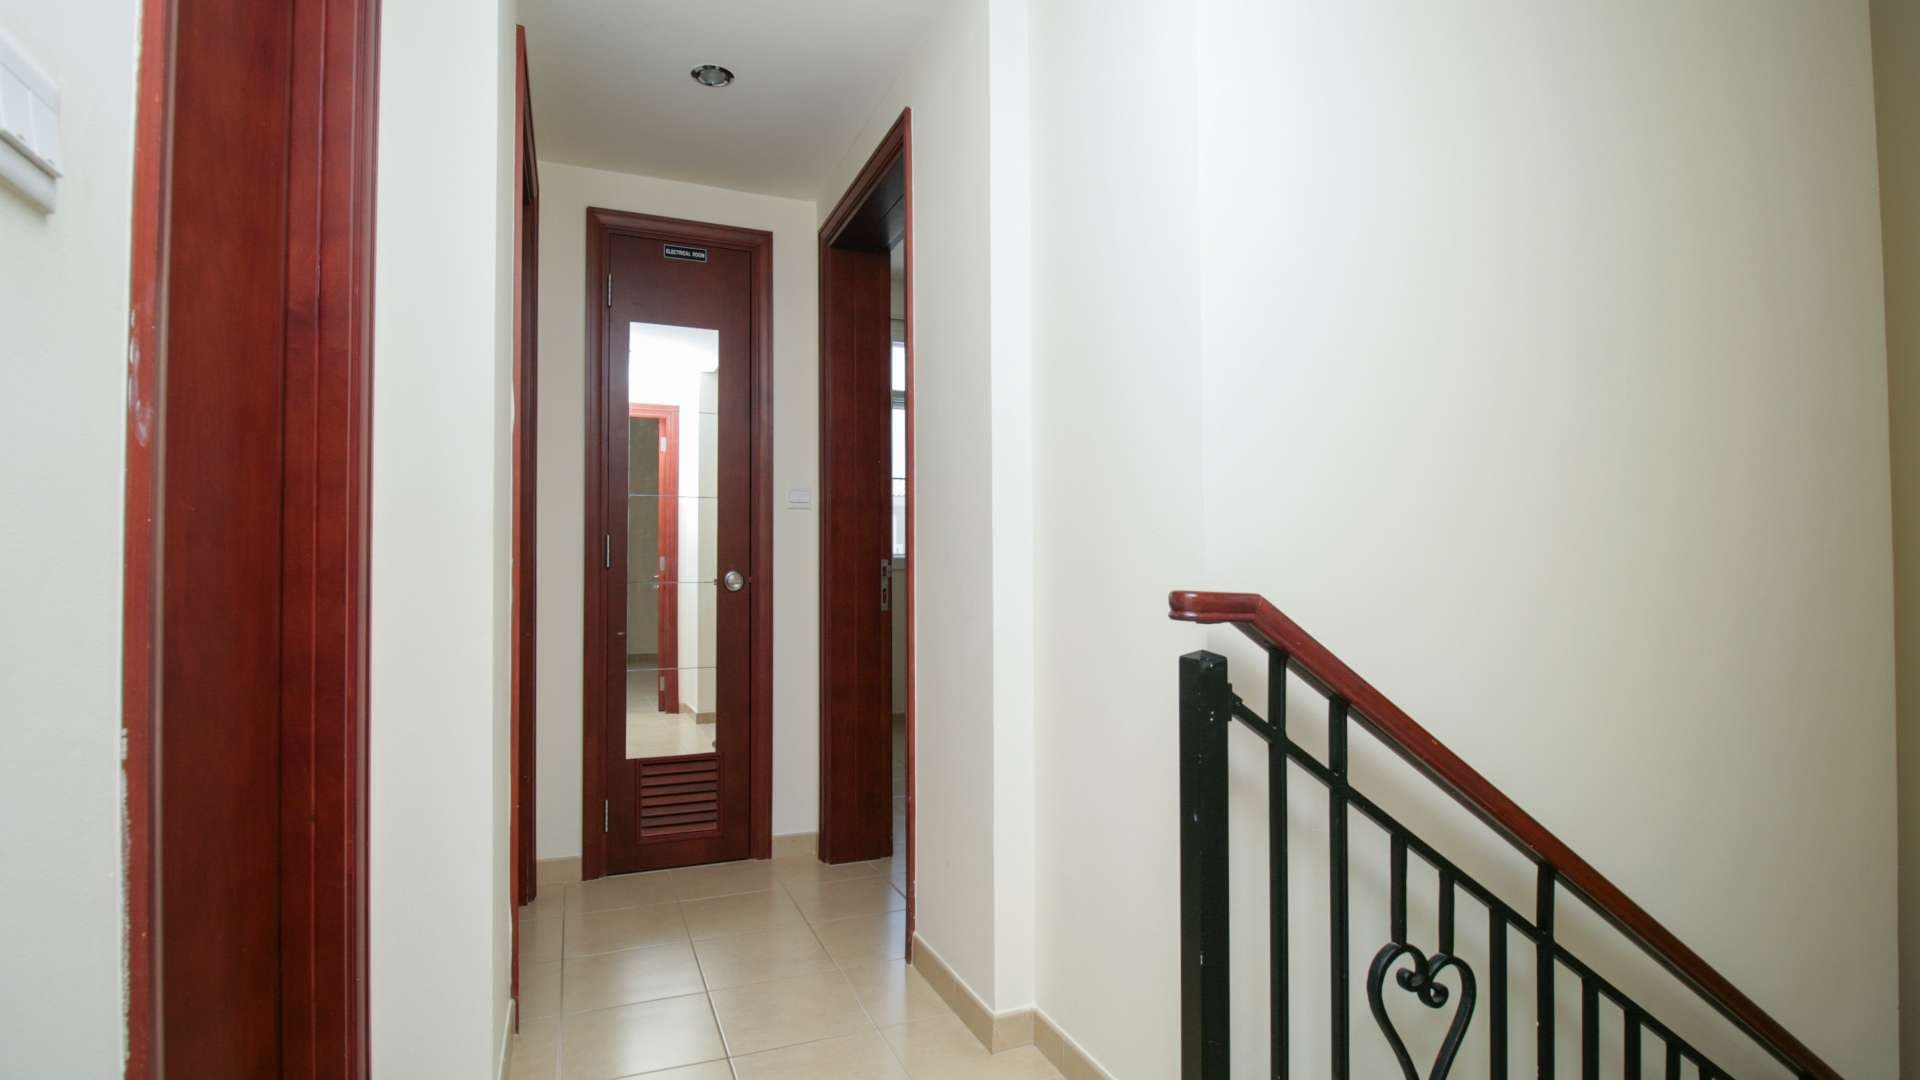  Bedroom Villa For Rent Al Reem Lp06837 A7bc1668a587980.jpg